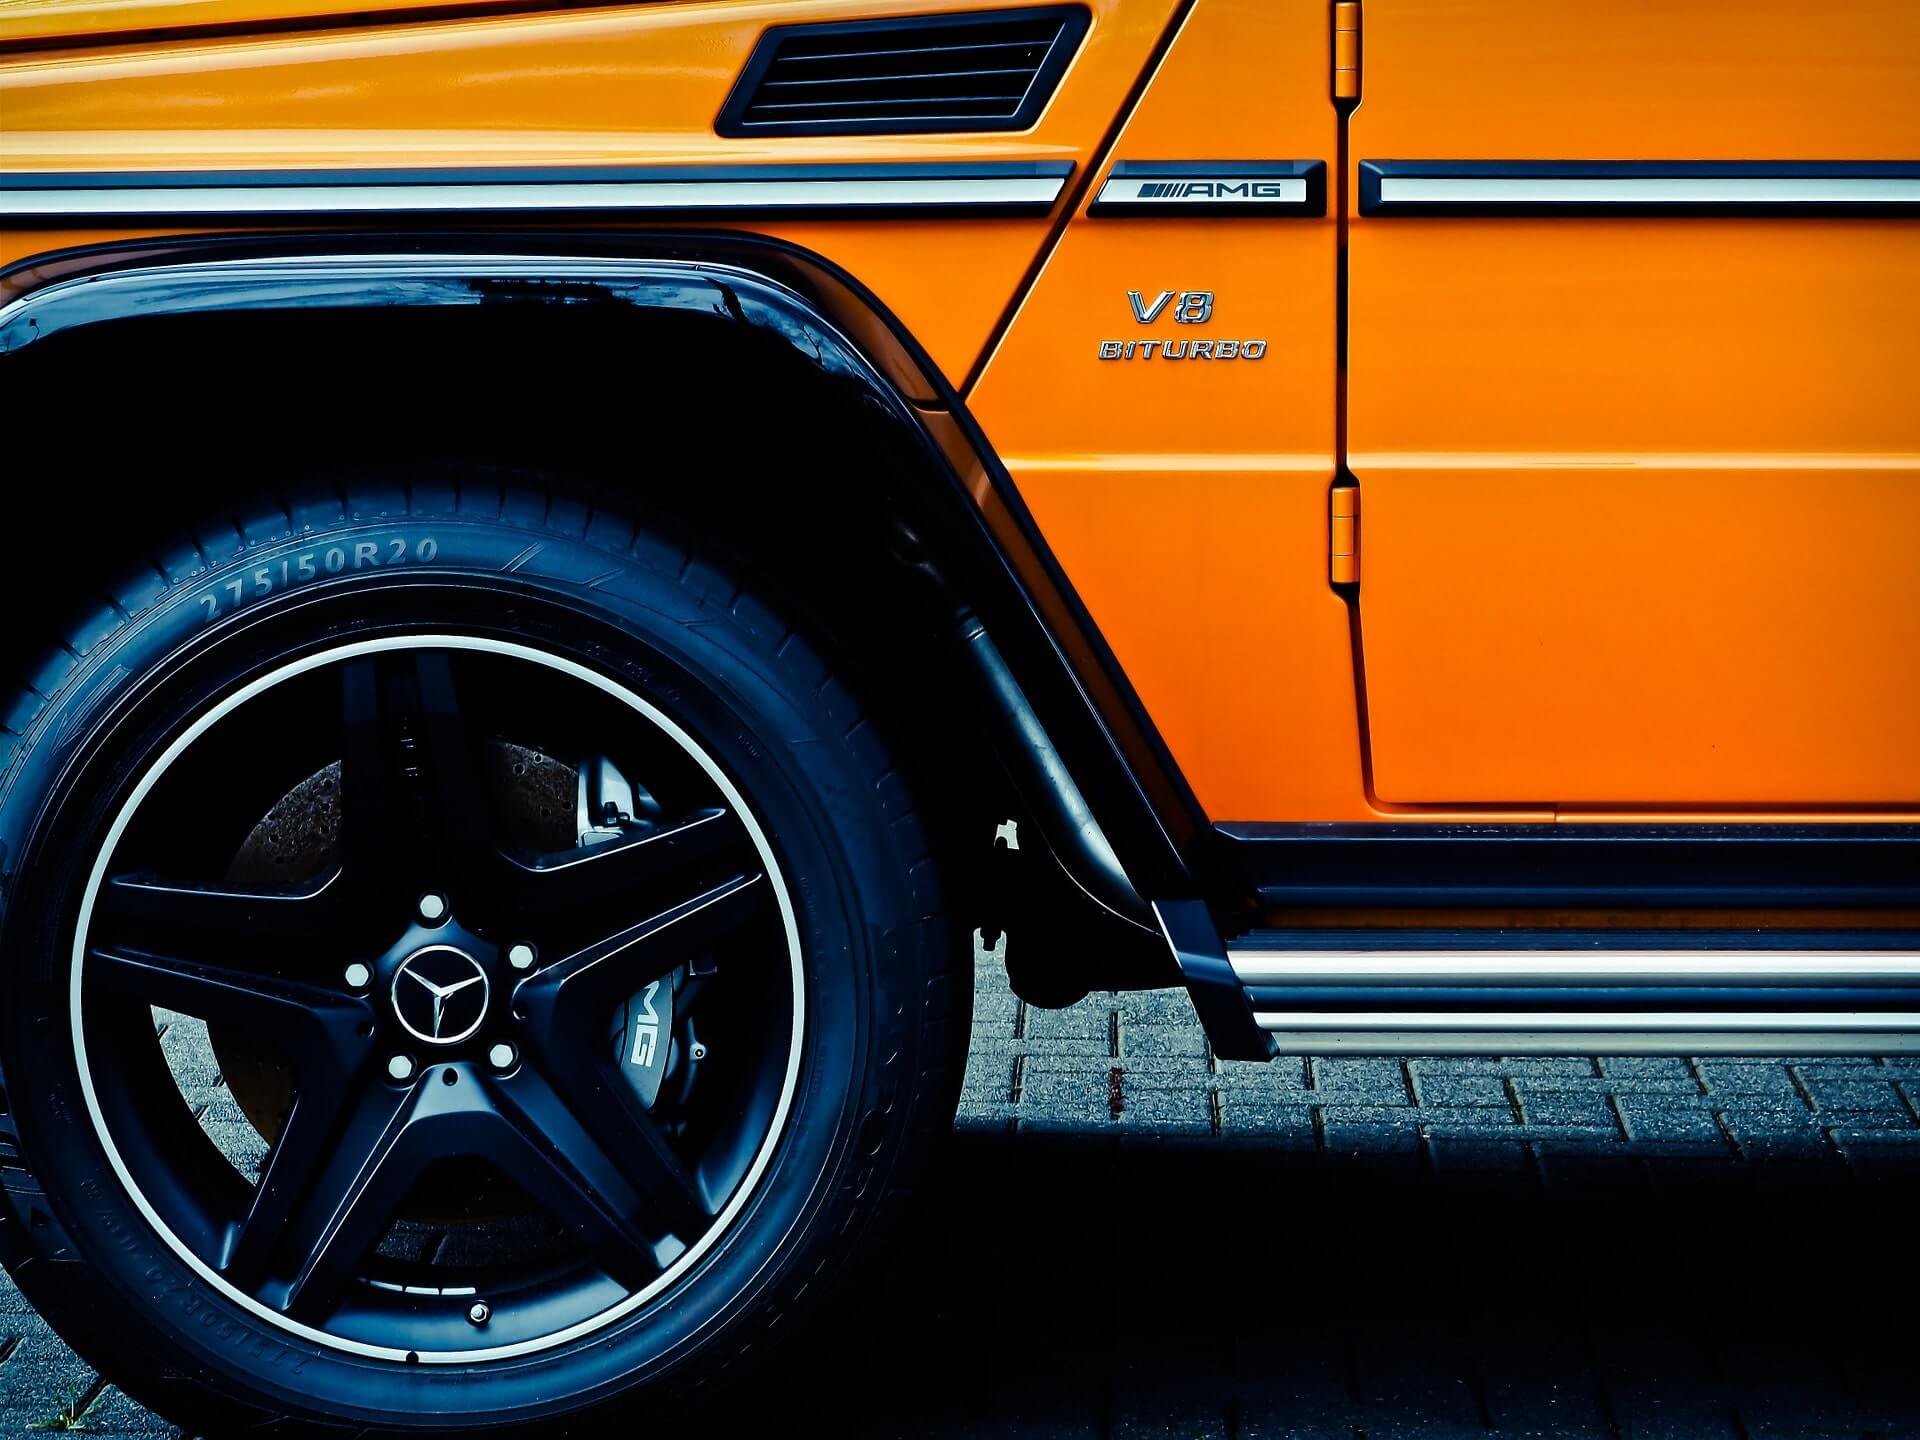 Roda frontal esquerda preta impressionante, porta parcial brilhante e estribo prateado brilhante de um SUV laranja